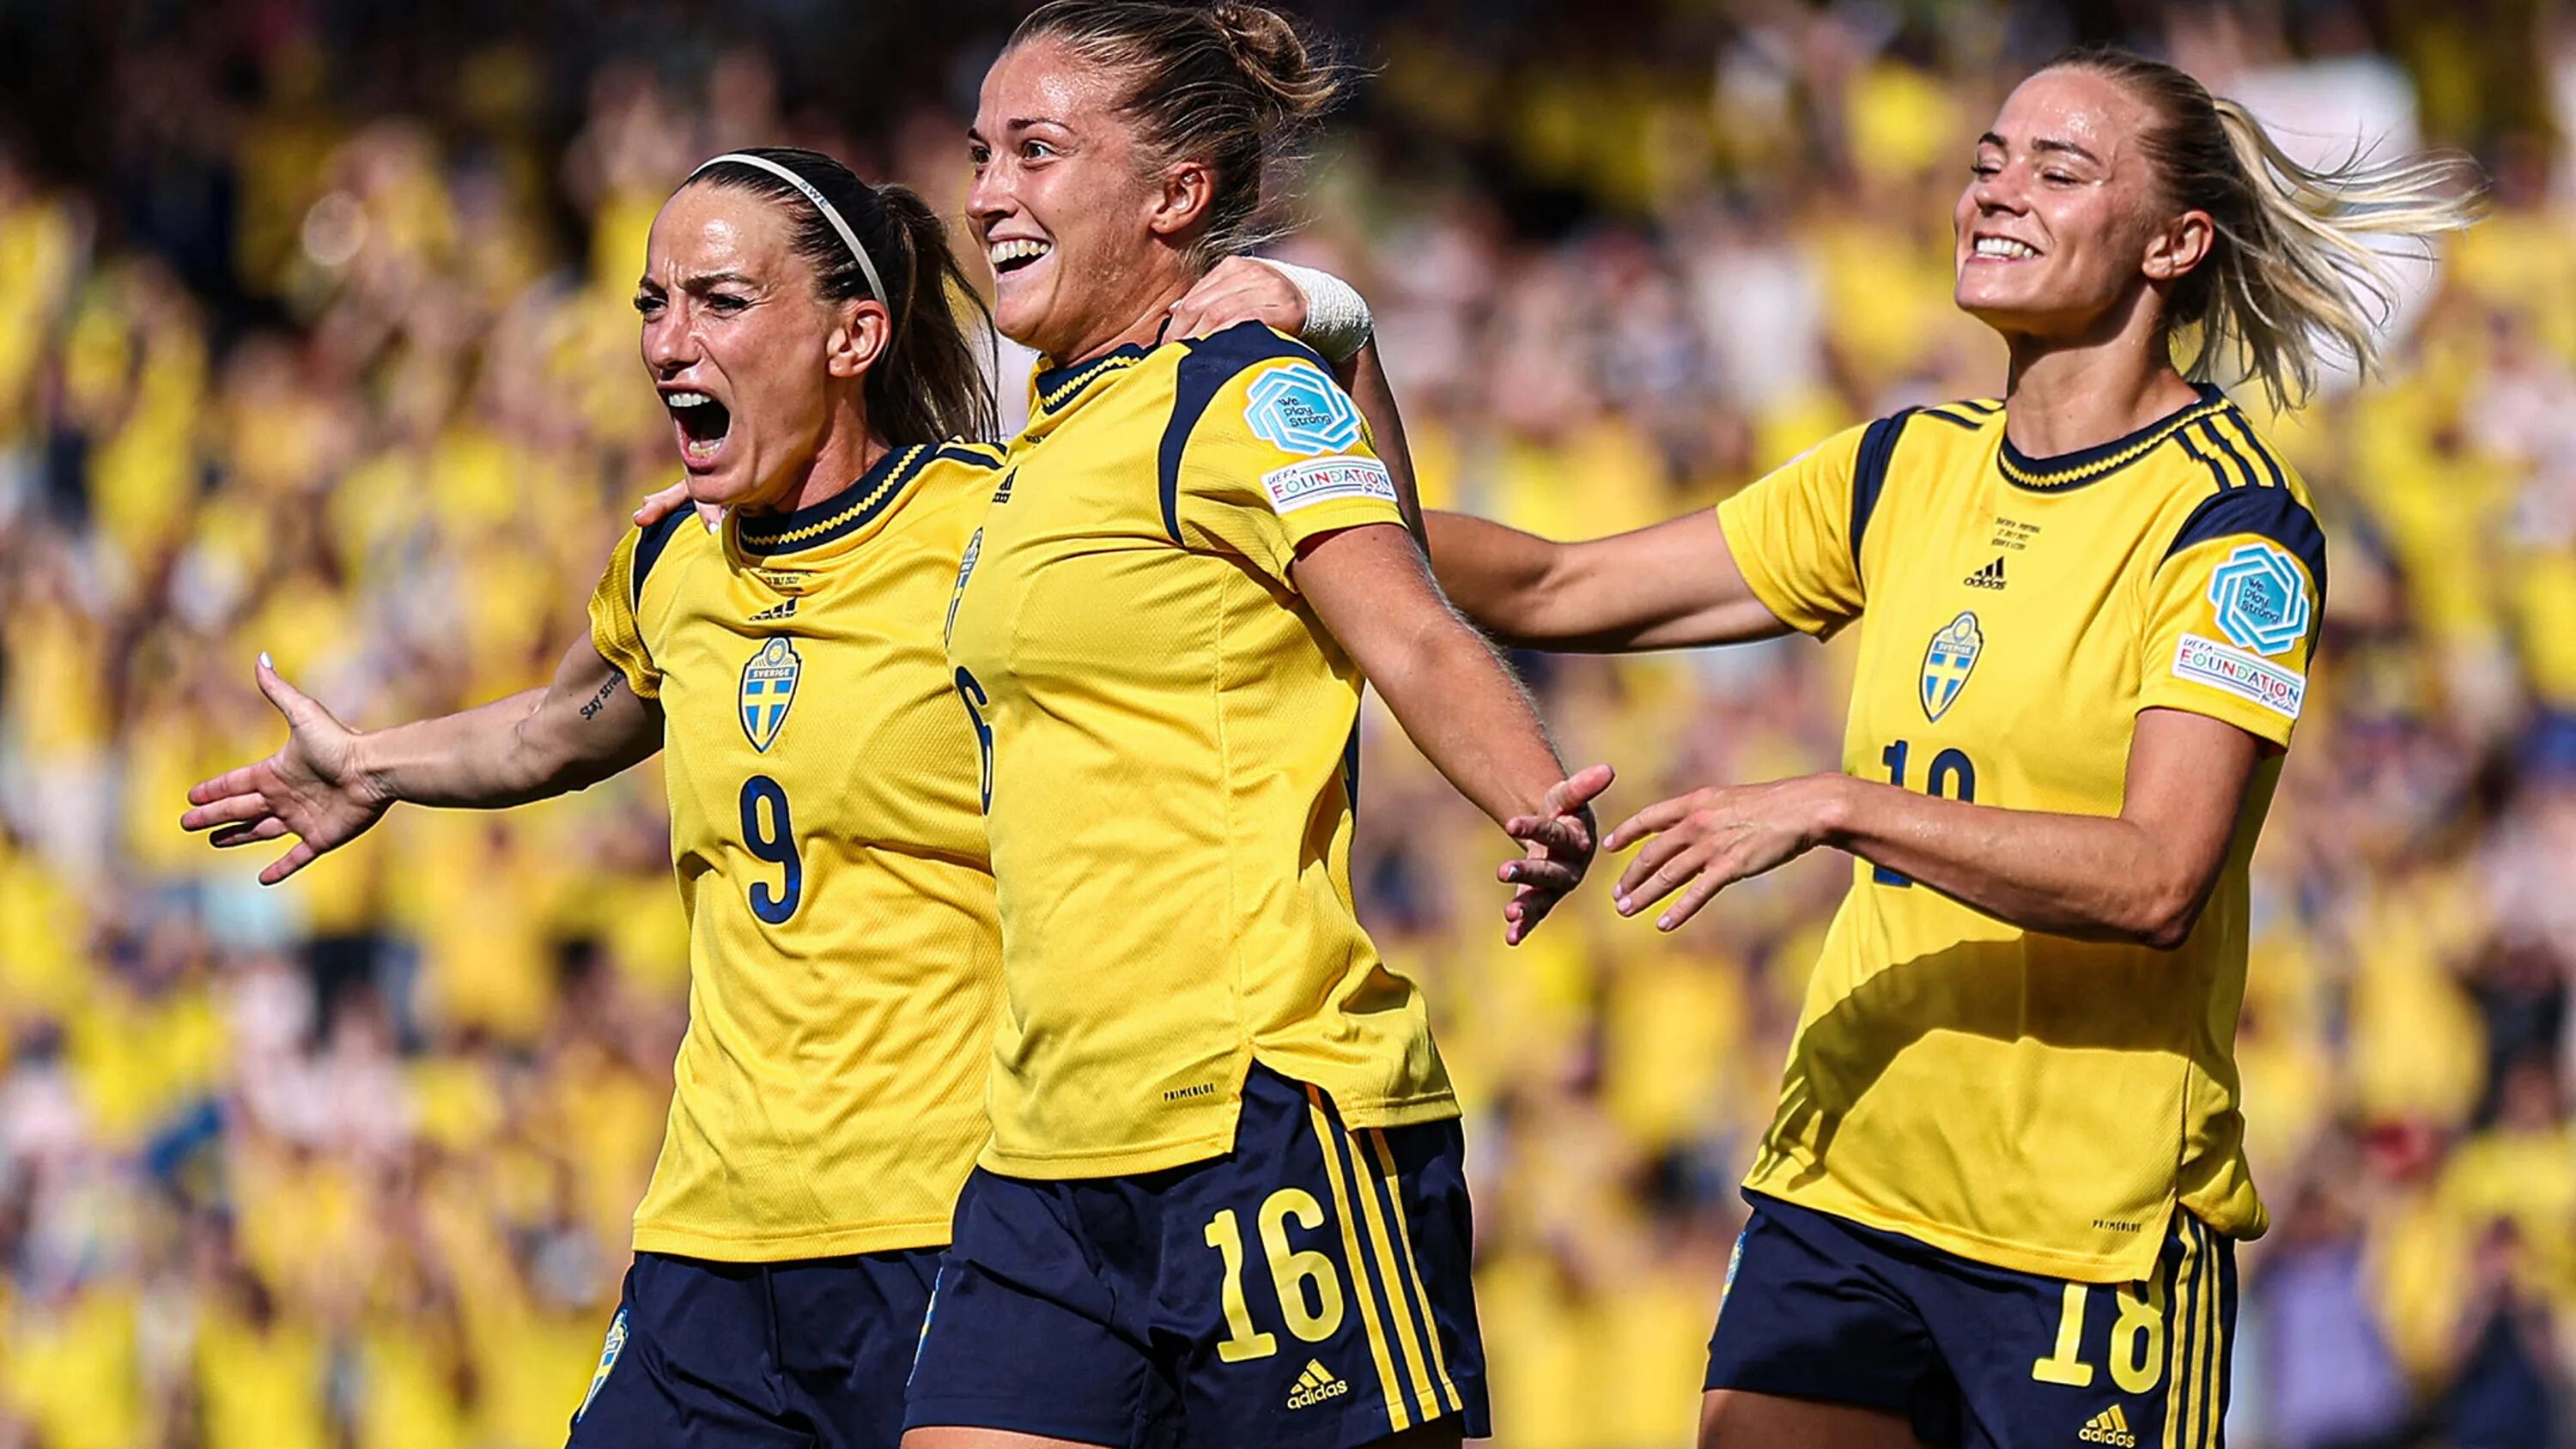 Косоваре Асллани Швеция. Женская сборная Бельгии по футболу евро 2022. Шведская сборная по футболу женская. Женщины Швеции.